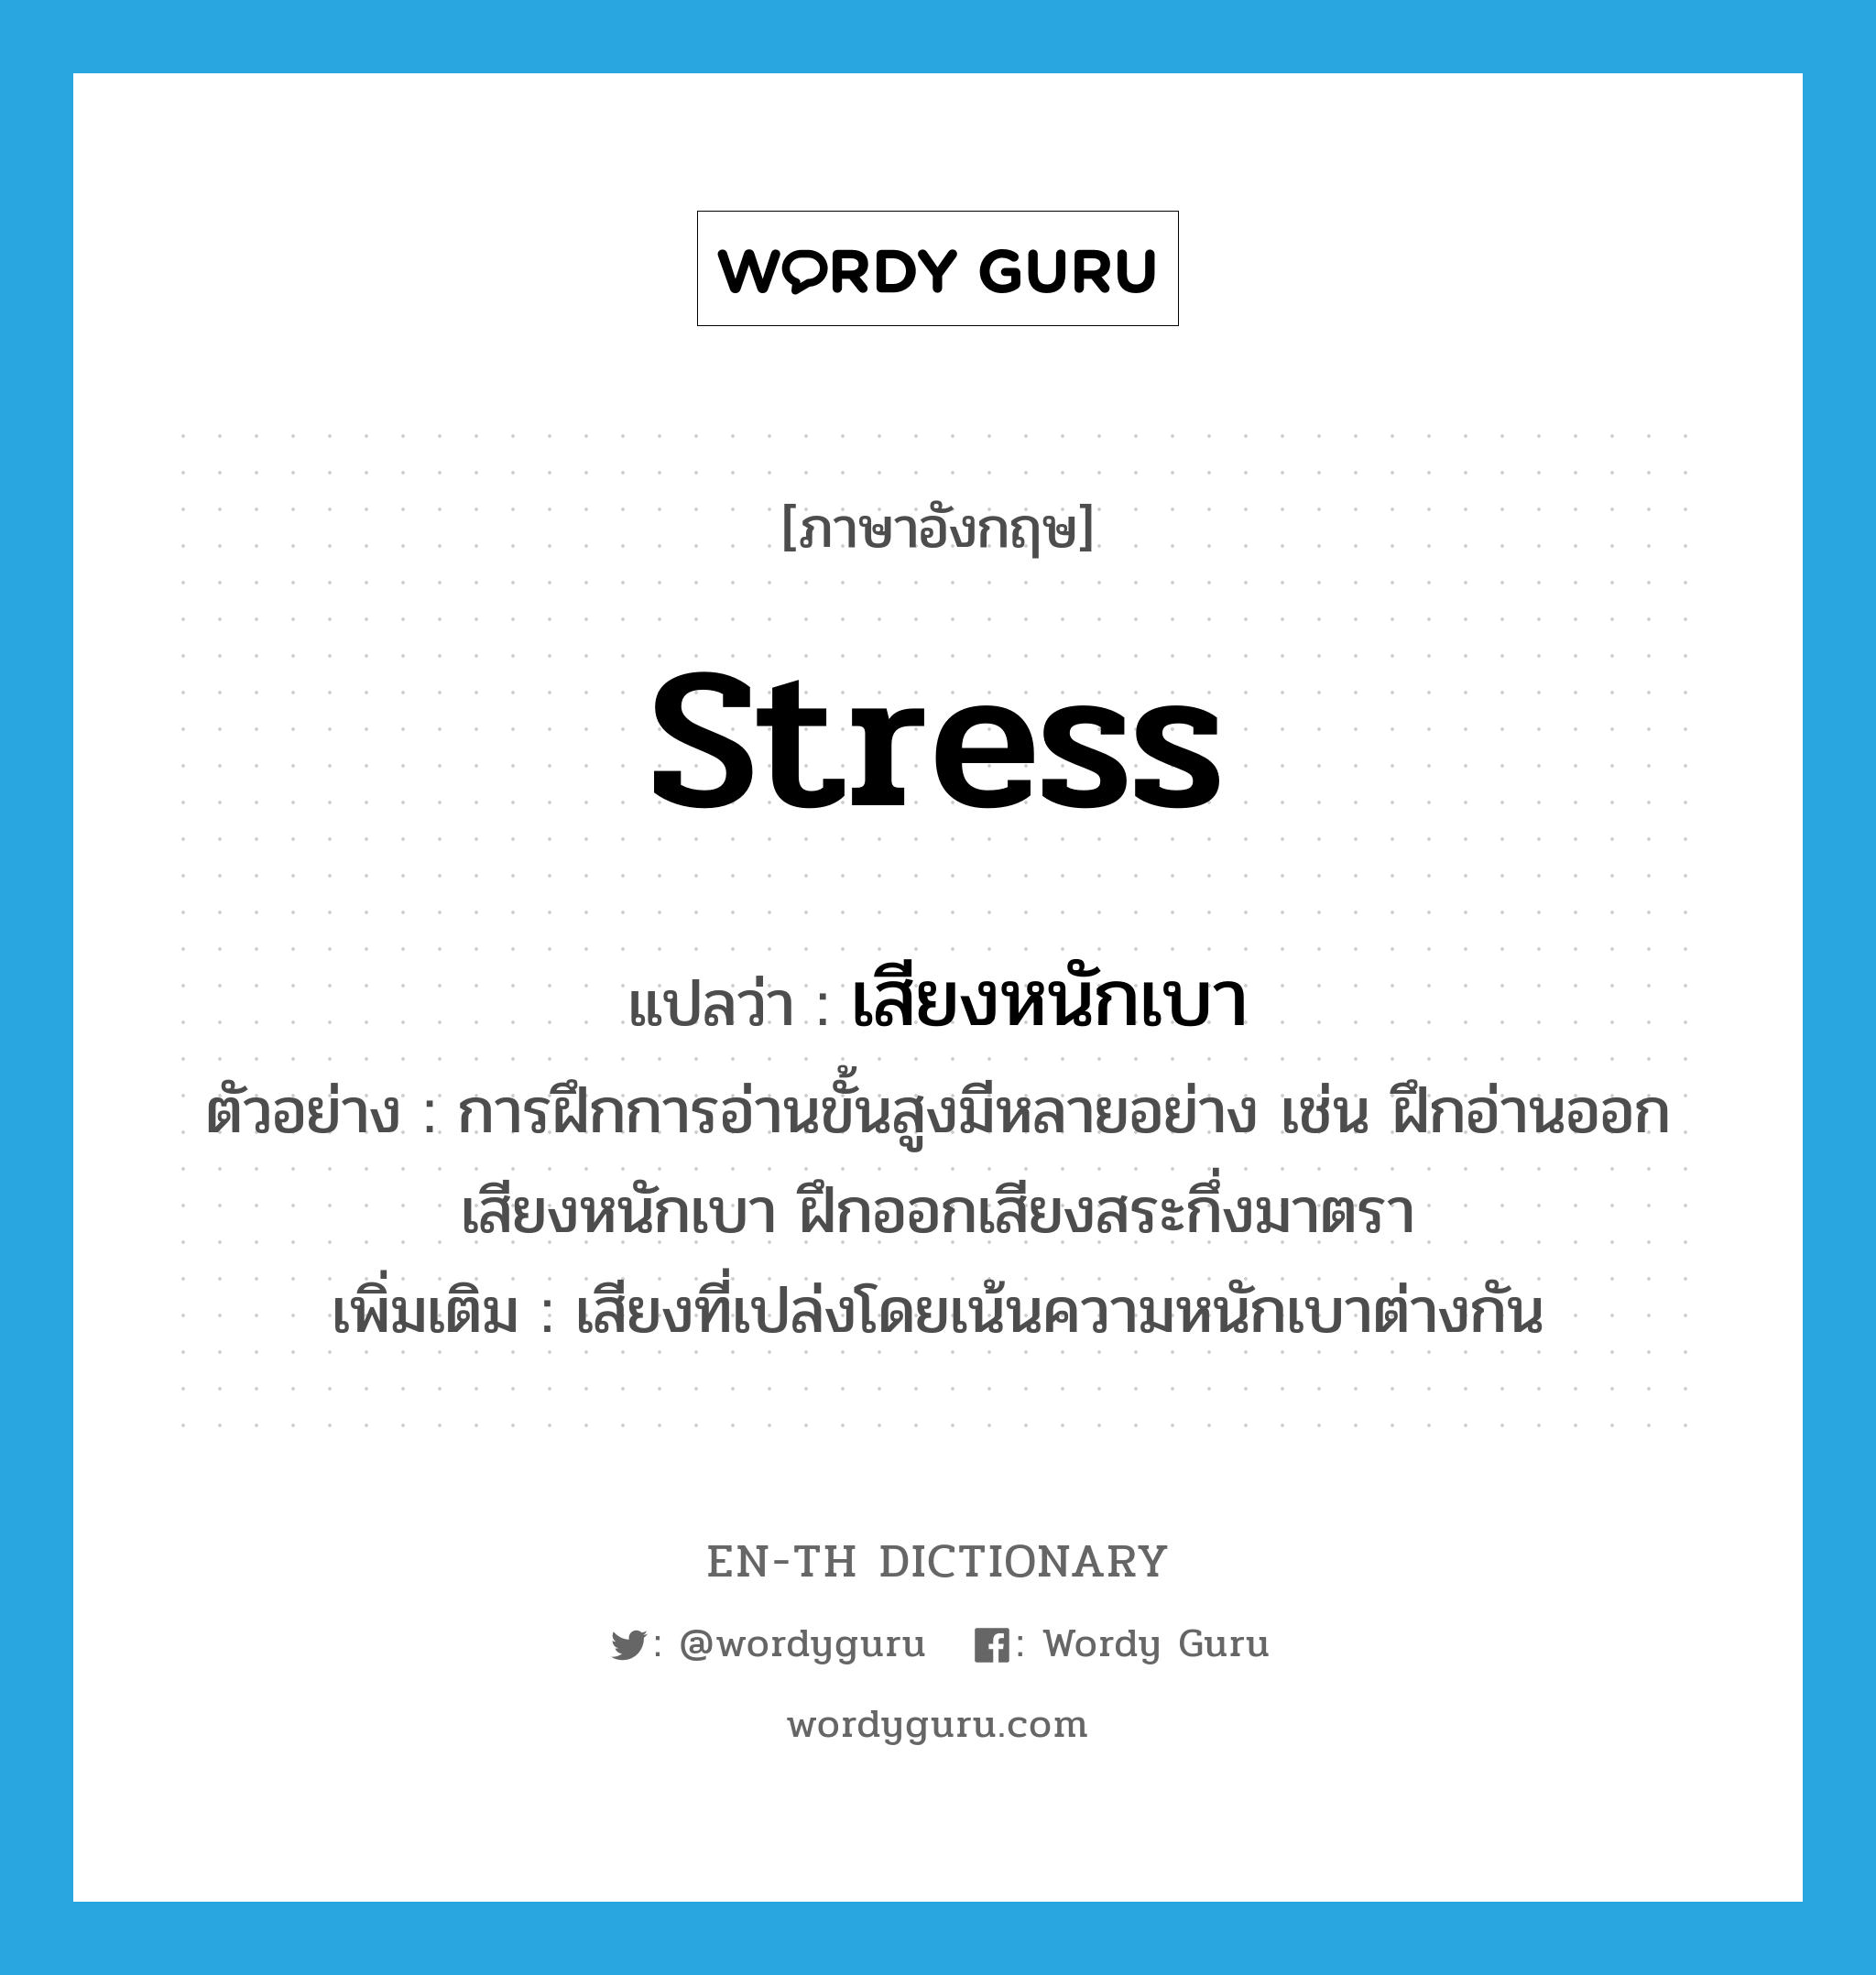 stress แปลว่า?, คำศัพท์ภาษาอังกฤษ stress แปลว่า เสียงหนักเบา ประเภท N ตัวอย่าง การฝึกการอ่านขั้นสูงมีหลายอย่าง เช่น ฝึกอ่านออกเสียงหนักเบา ฝึกออกเสียงสระกึ่งมาตรา เพิ่มเติม เสียงที่เปล่งโดยเน้นความหนักเบาต่างกัน หมวด N